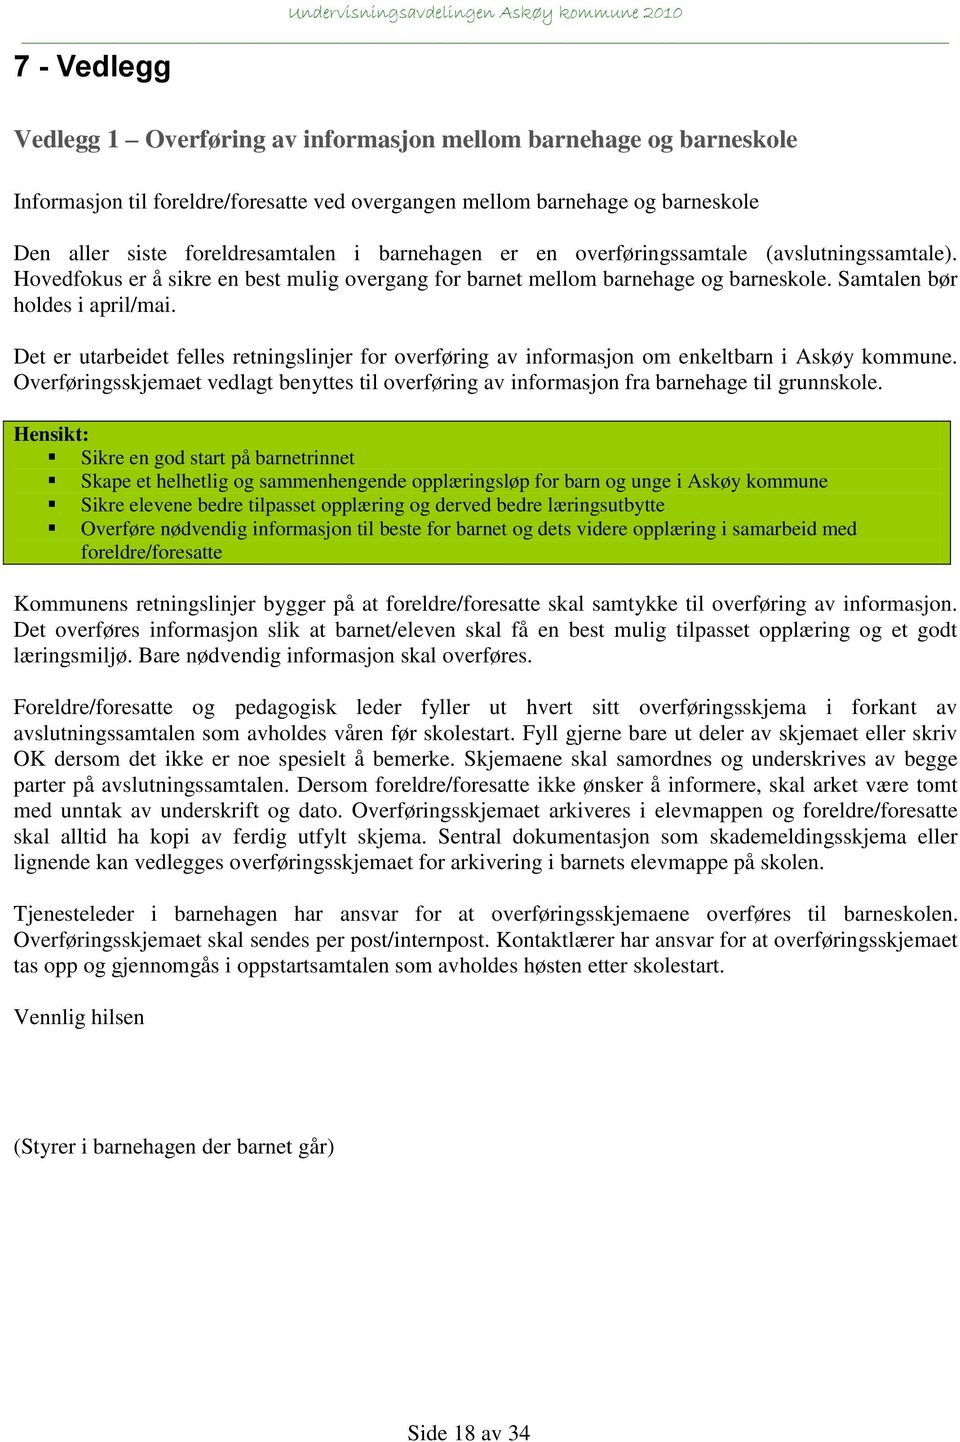 Det er utarbeidet felles retningslinjer for overføring av informasjon om enkeltbarn i Askøy kommune. Overføringsskjemaet vedlagt benyttes til overføring av informasjon fra barnehage til grunnskole.